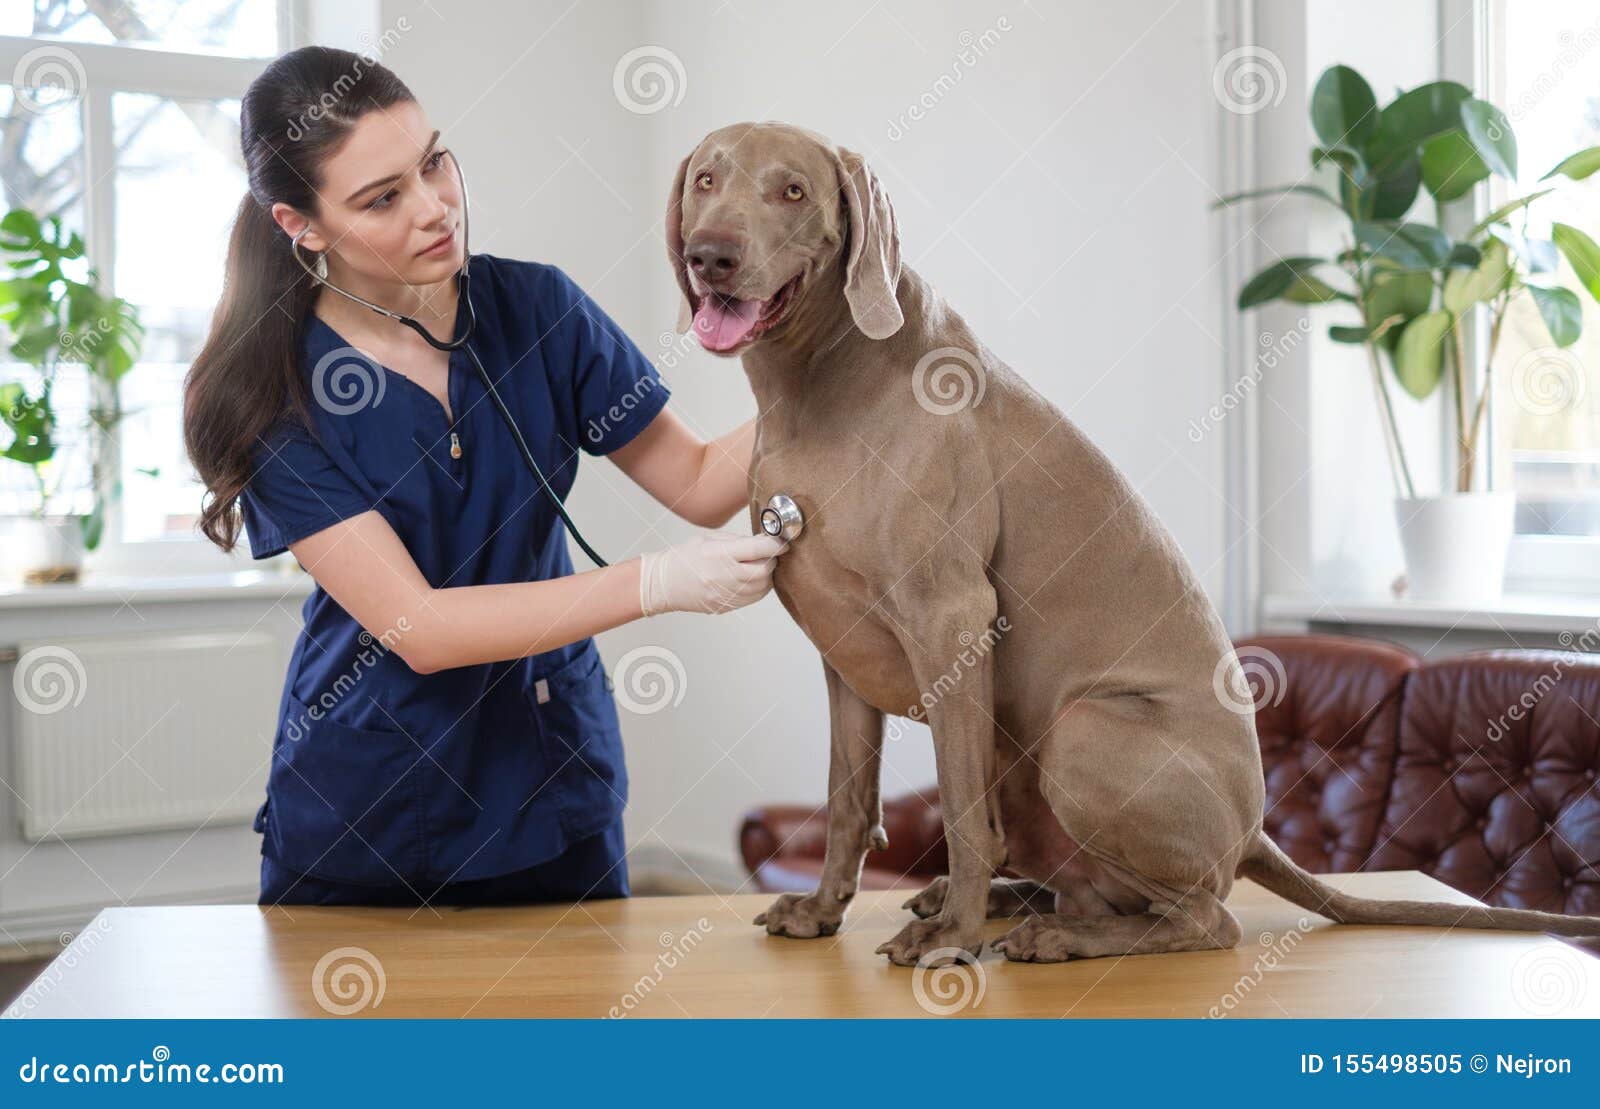 veterinary surgeon and weimaraner dog at vet clinic